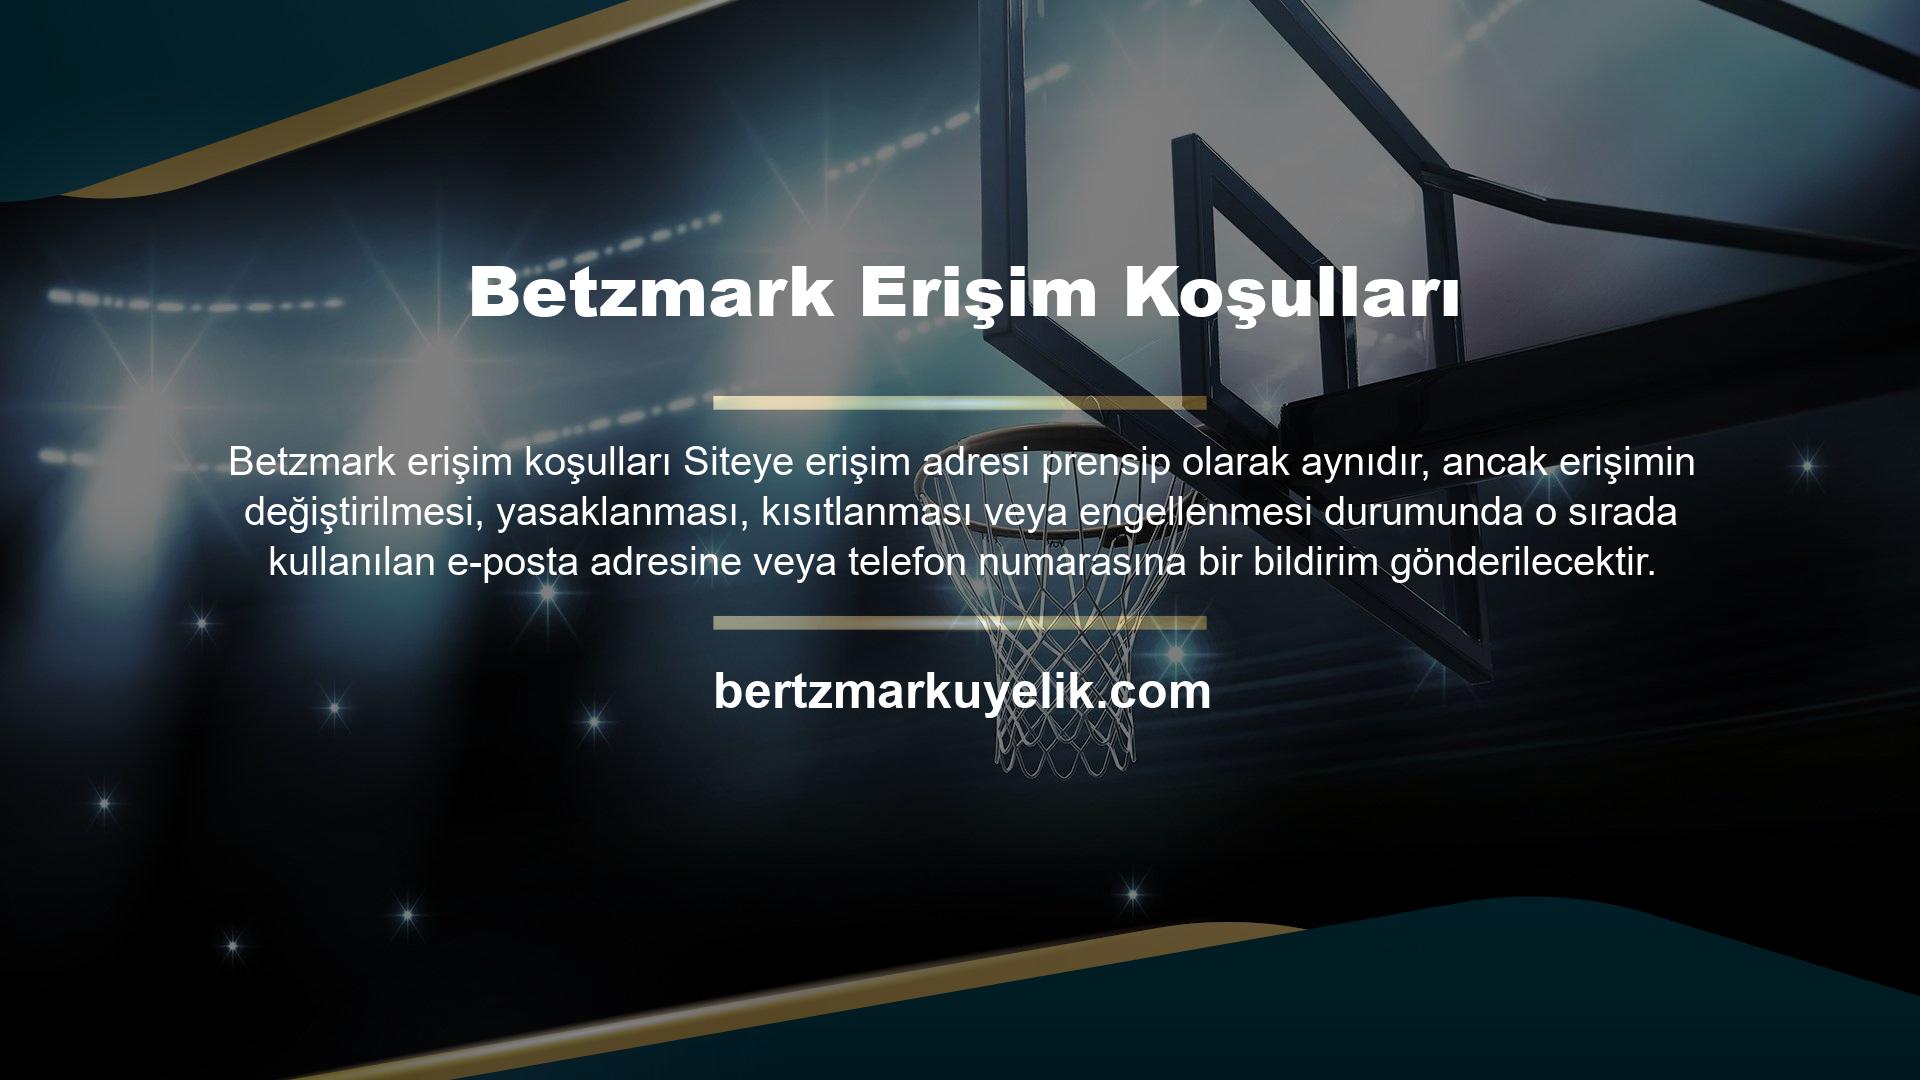 Betzmark Kayıt Ve Erişim SorunlarıBetzmark bahis sitesi, kullanıcı odaklı oyun kategorilerinde güvenilir yaklaşımı ve bahis seçeneklerinin çeşitliliği nedeniyle favori bir bahis sitesi haline geldi